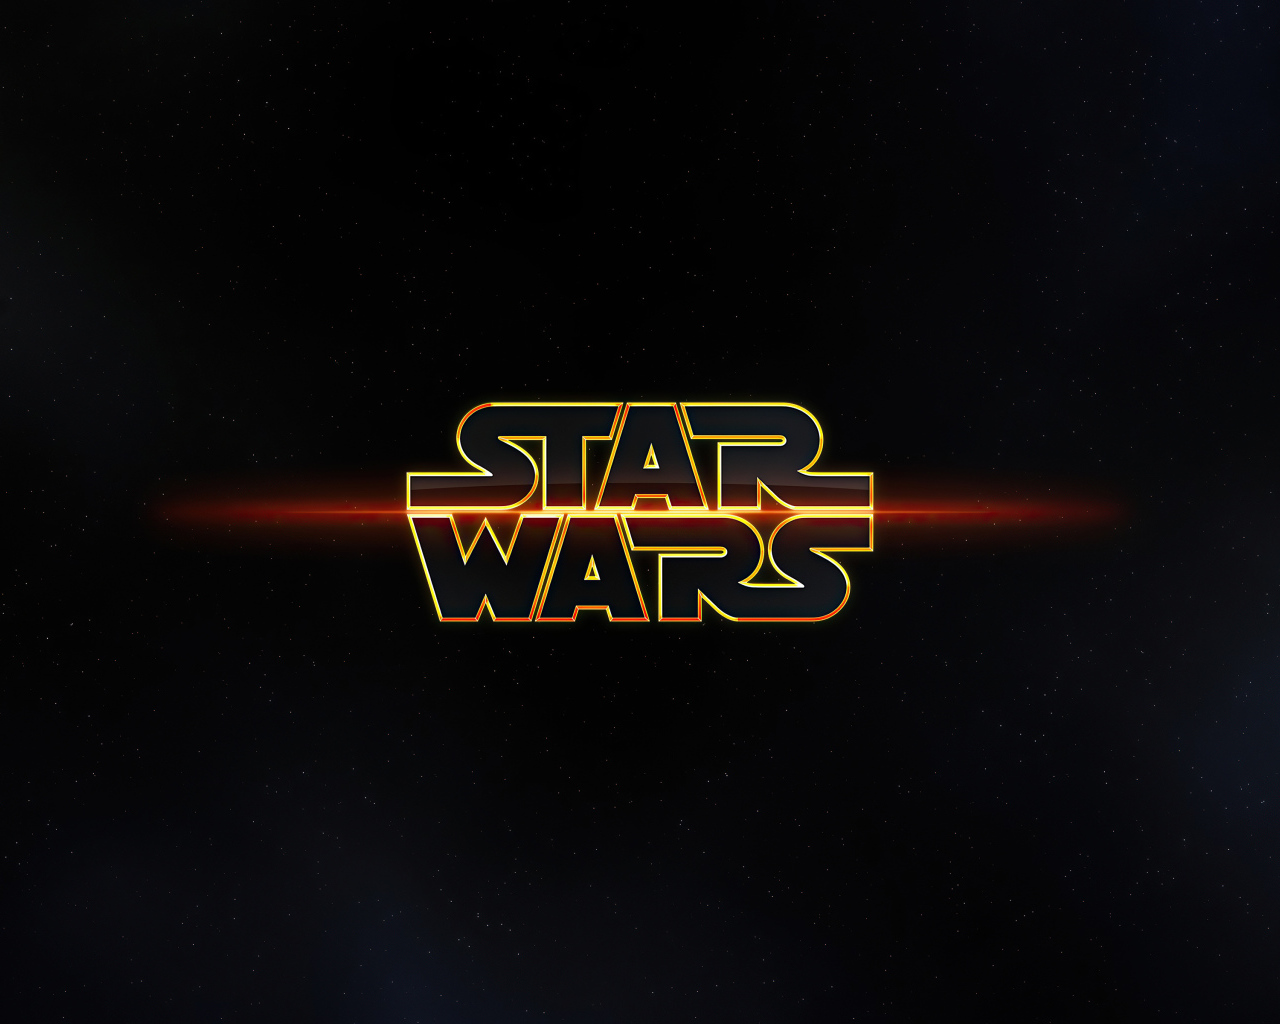 Логотип Звездные войны на фоне неба